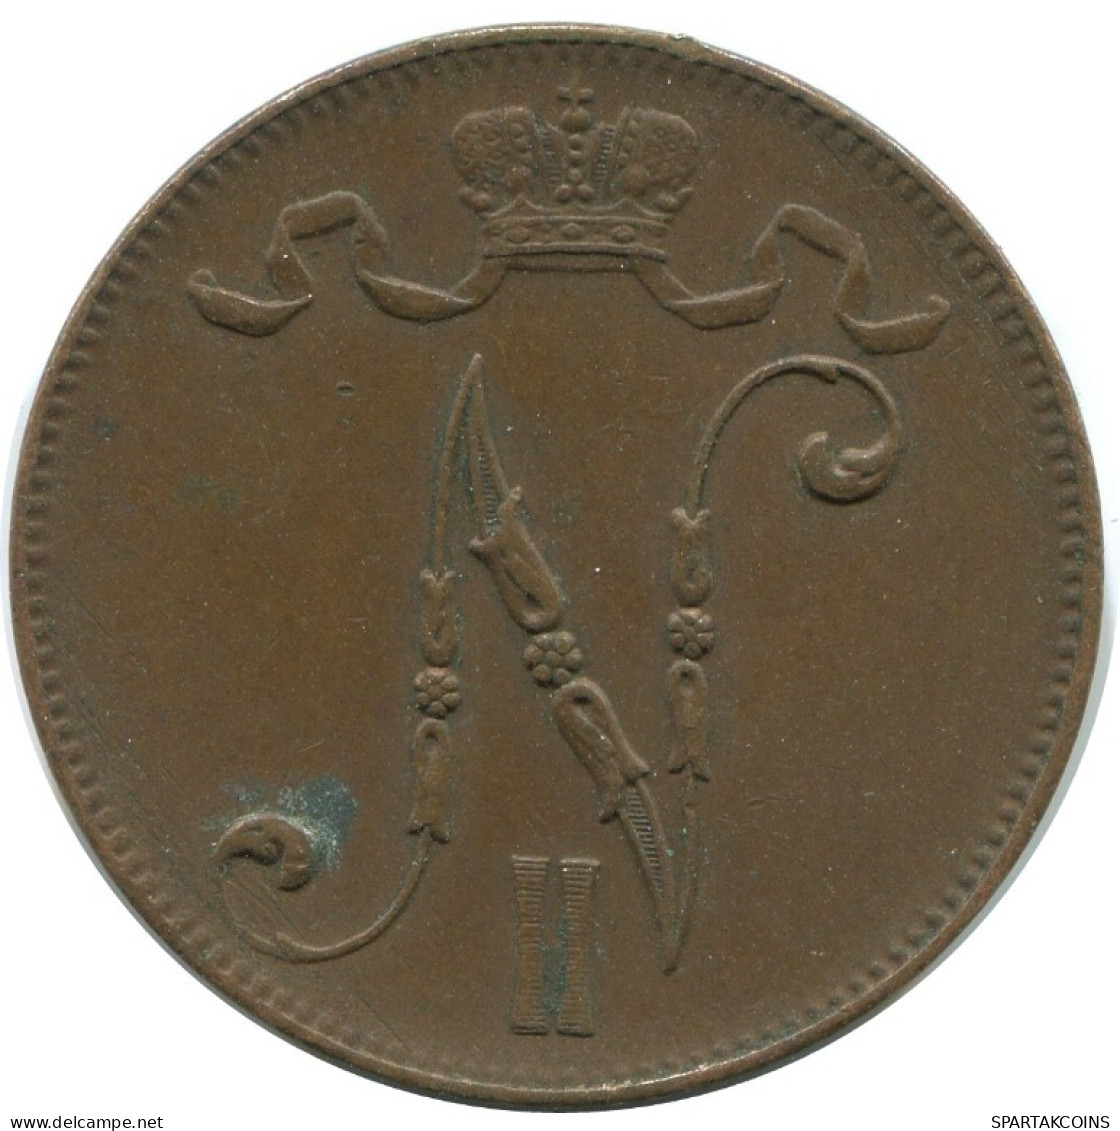 5 PENNIA 1916 FINLAND Coin RUSSIA EMPIRE #AB273.5.U.A - Finlande